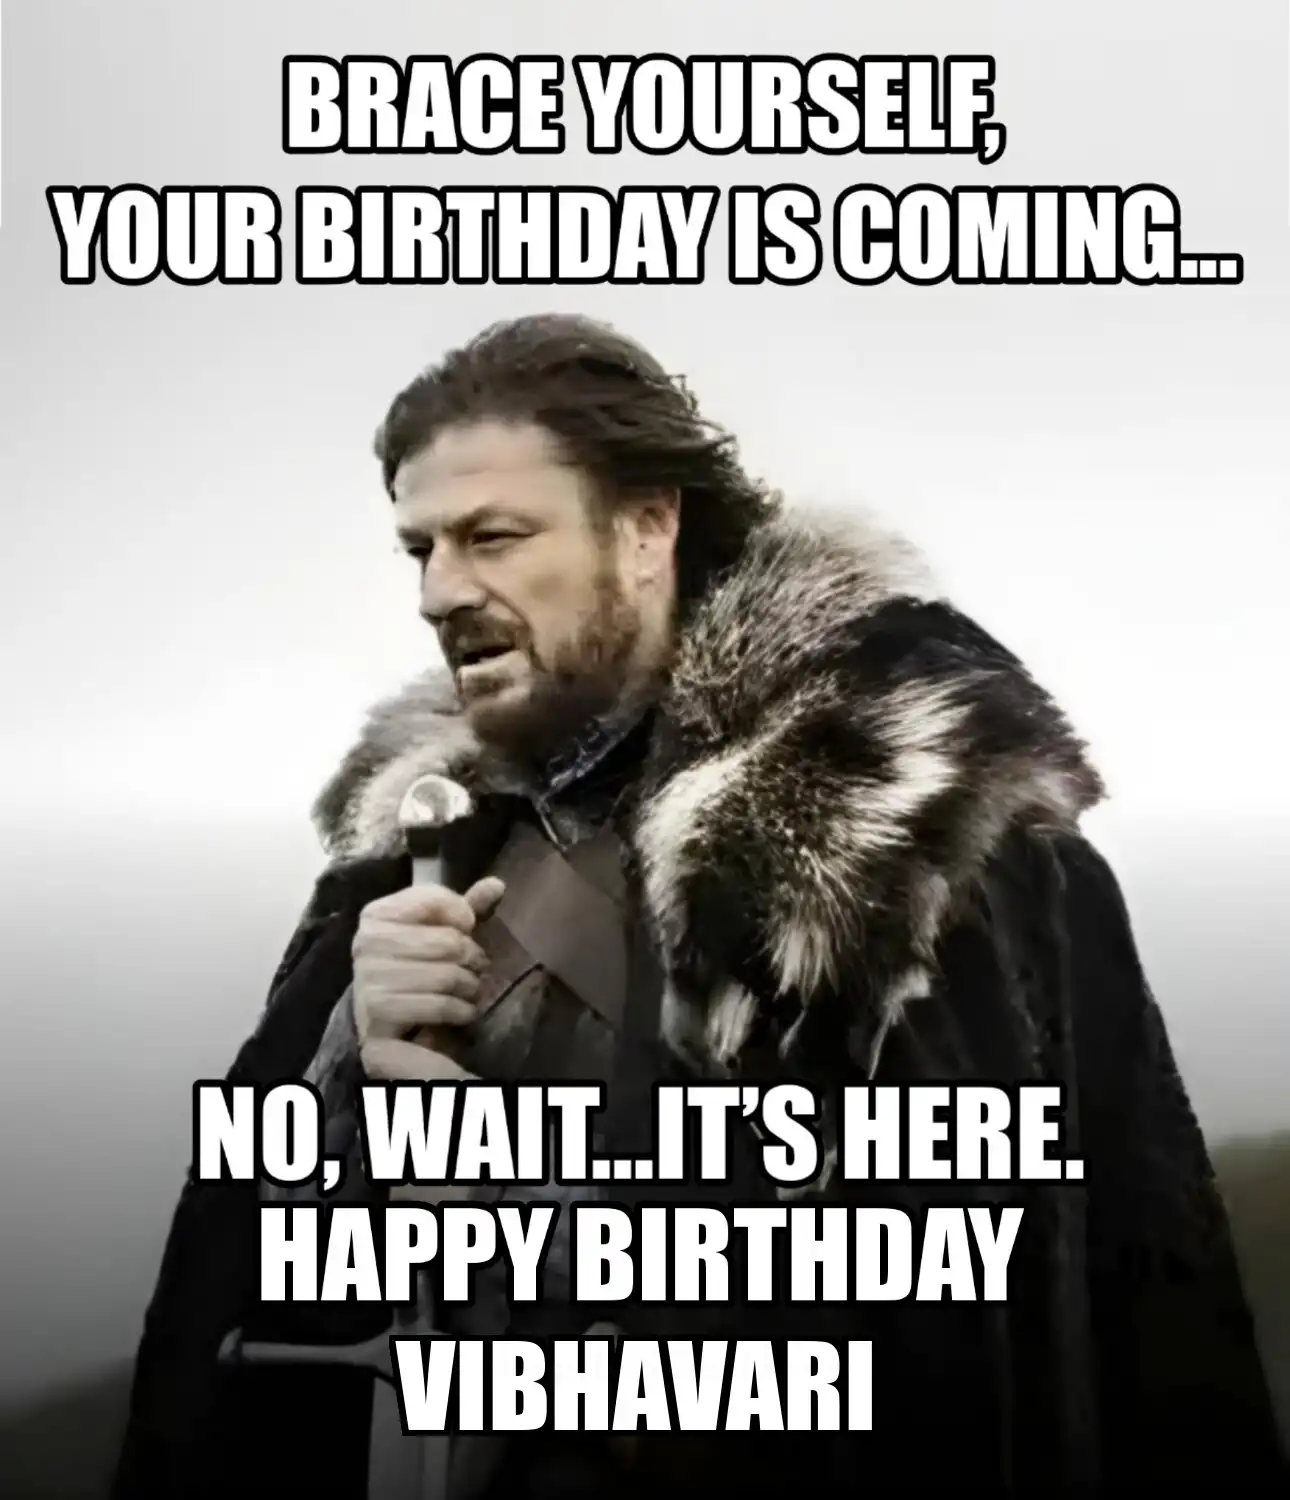 Happy Birthday Vibhavari Brace Yourself Your Birthday Is Coming Meme